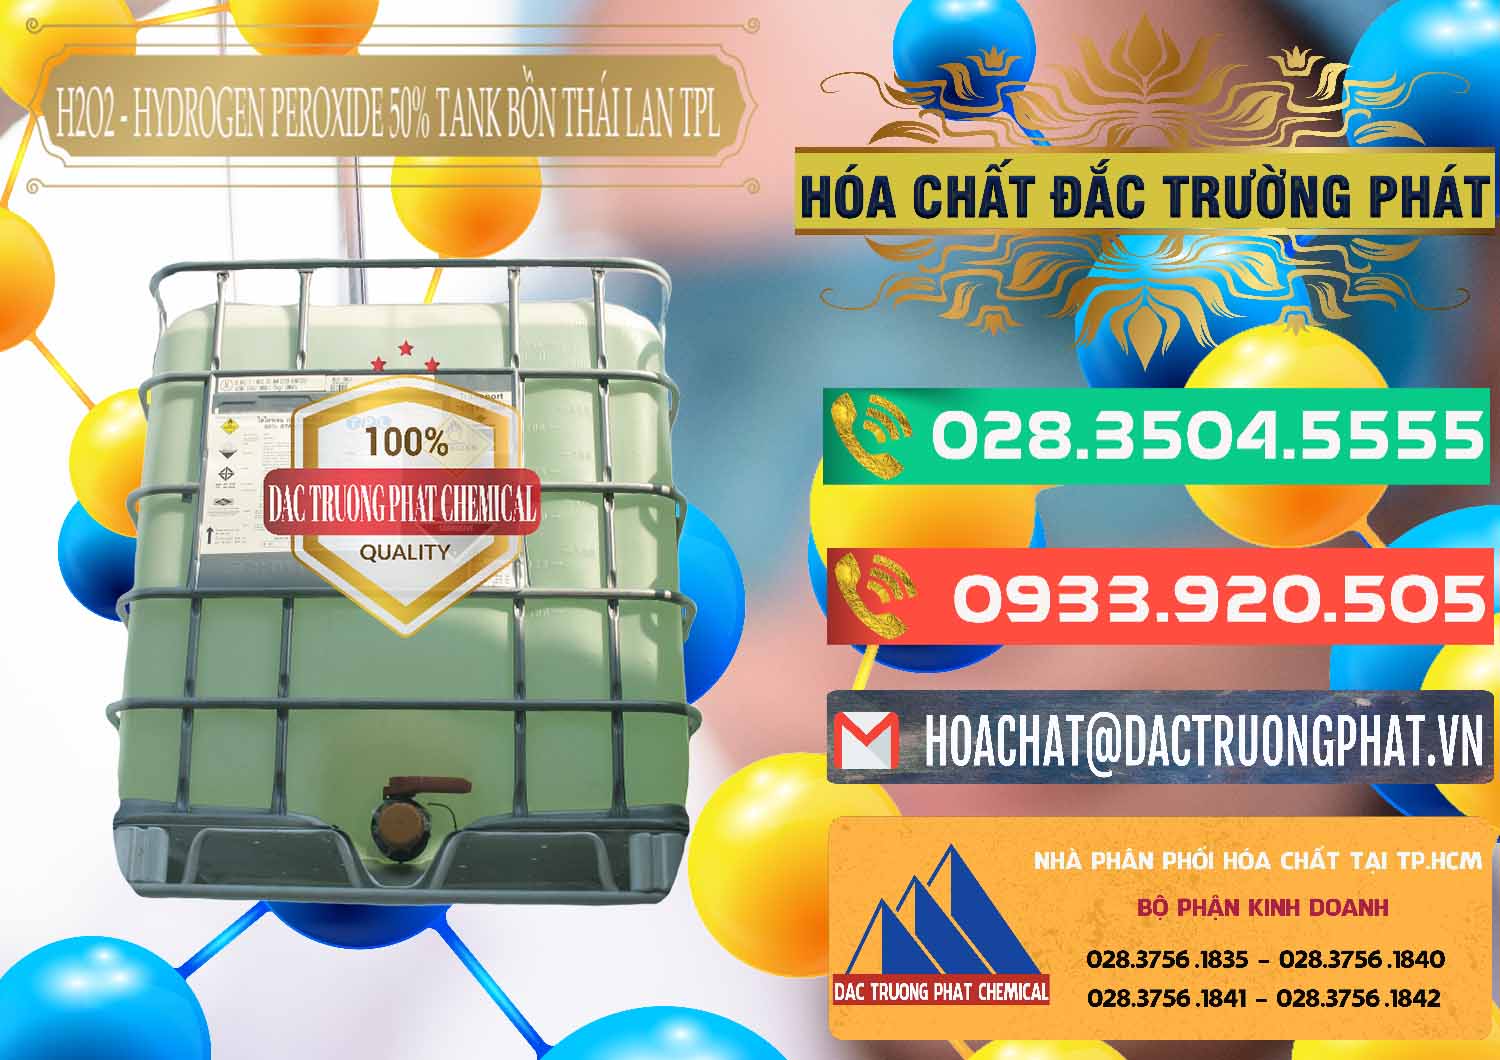 Nhà nhập khẩu và bán H2O2 - Hydrogen Peroxide 50% Tank IBC Bồn Thái Lan TPL - 0073 - Nơi cung cấp & phân phối hóa chất tại TP.HCM - congtyhoachat.com.vn